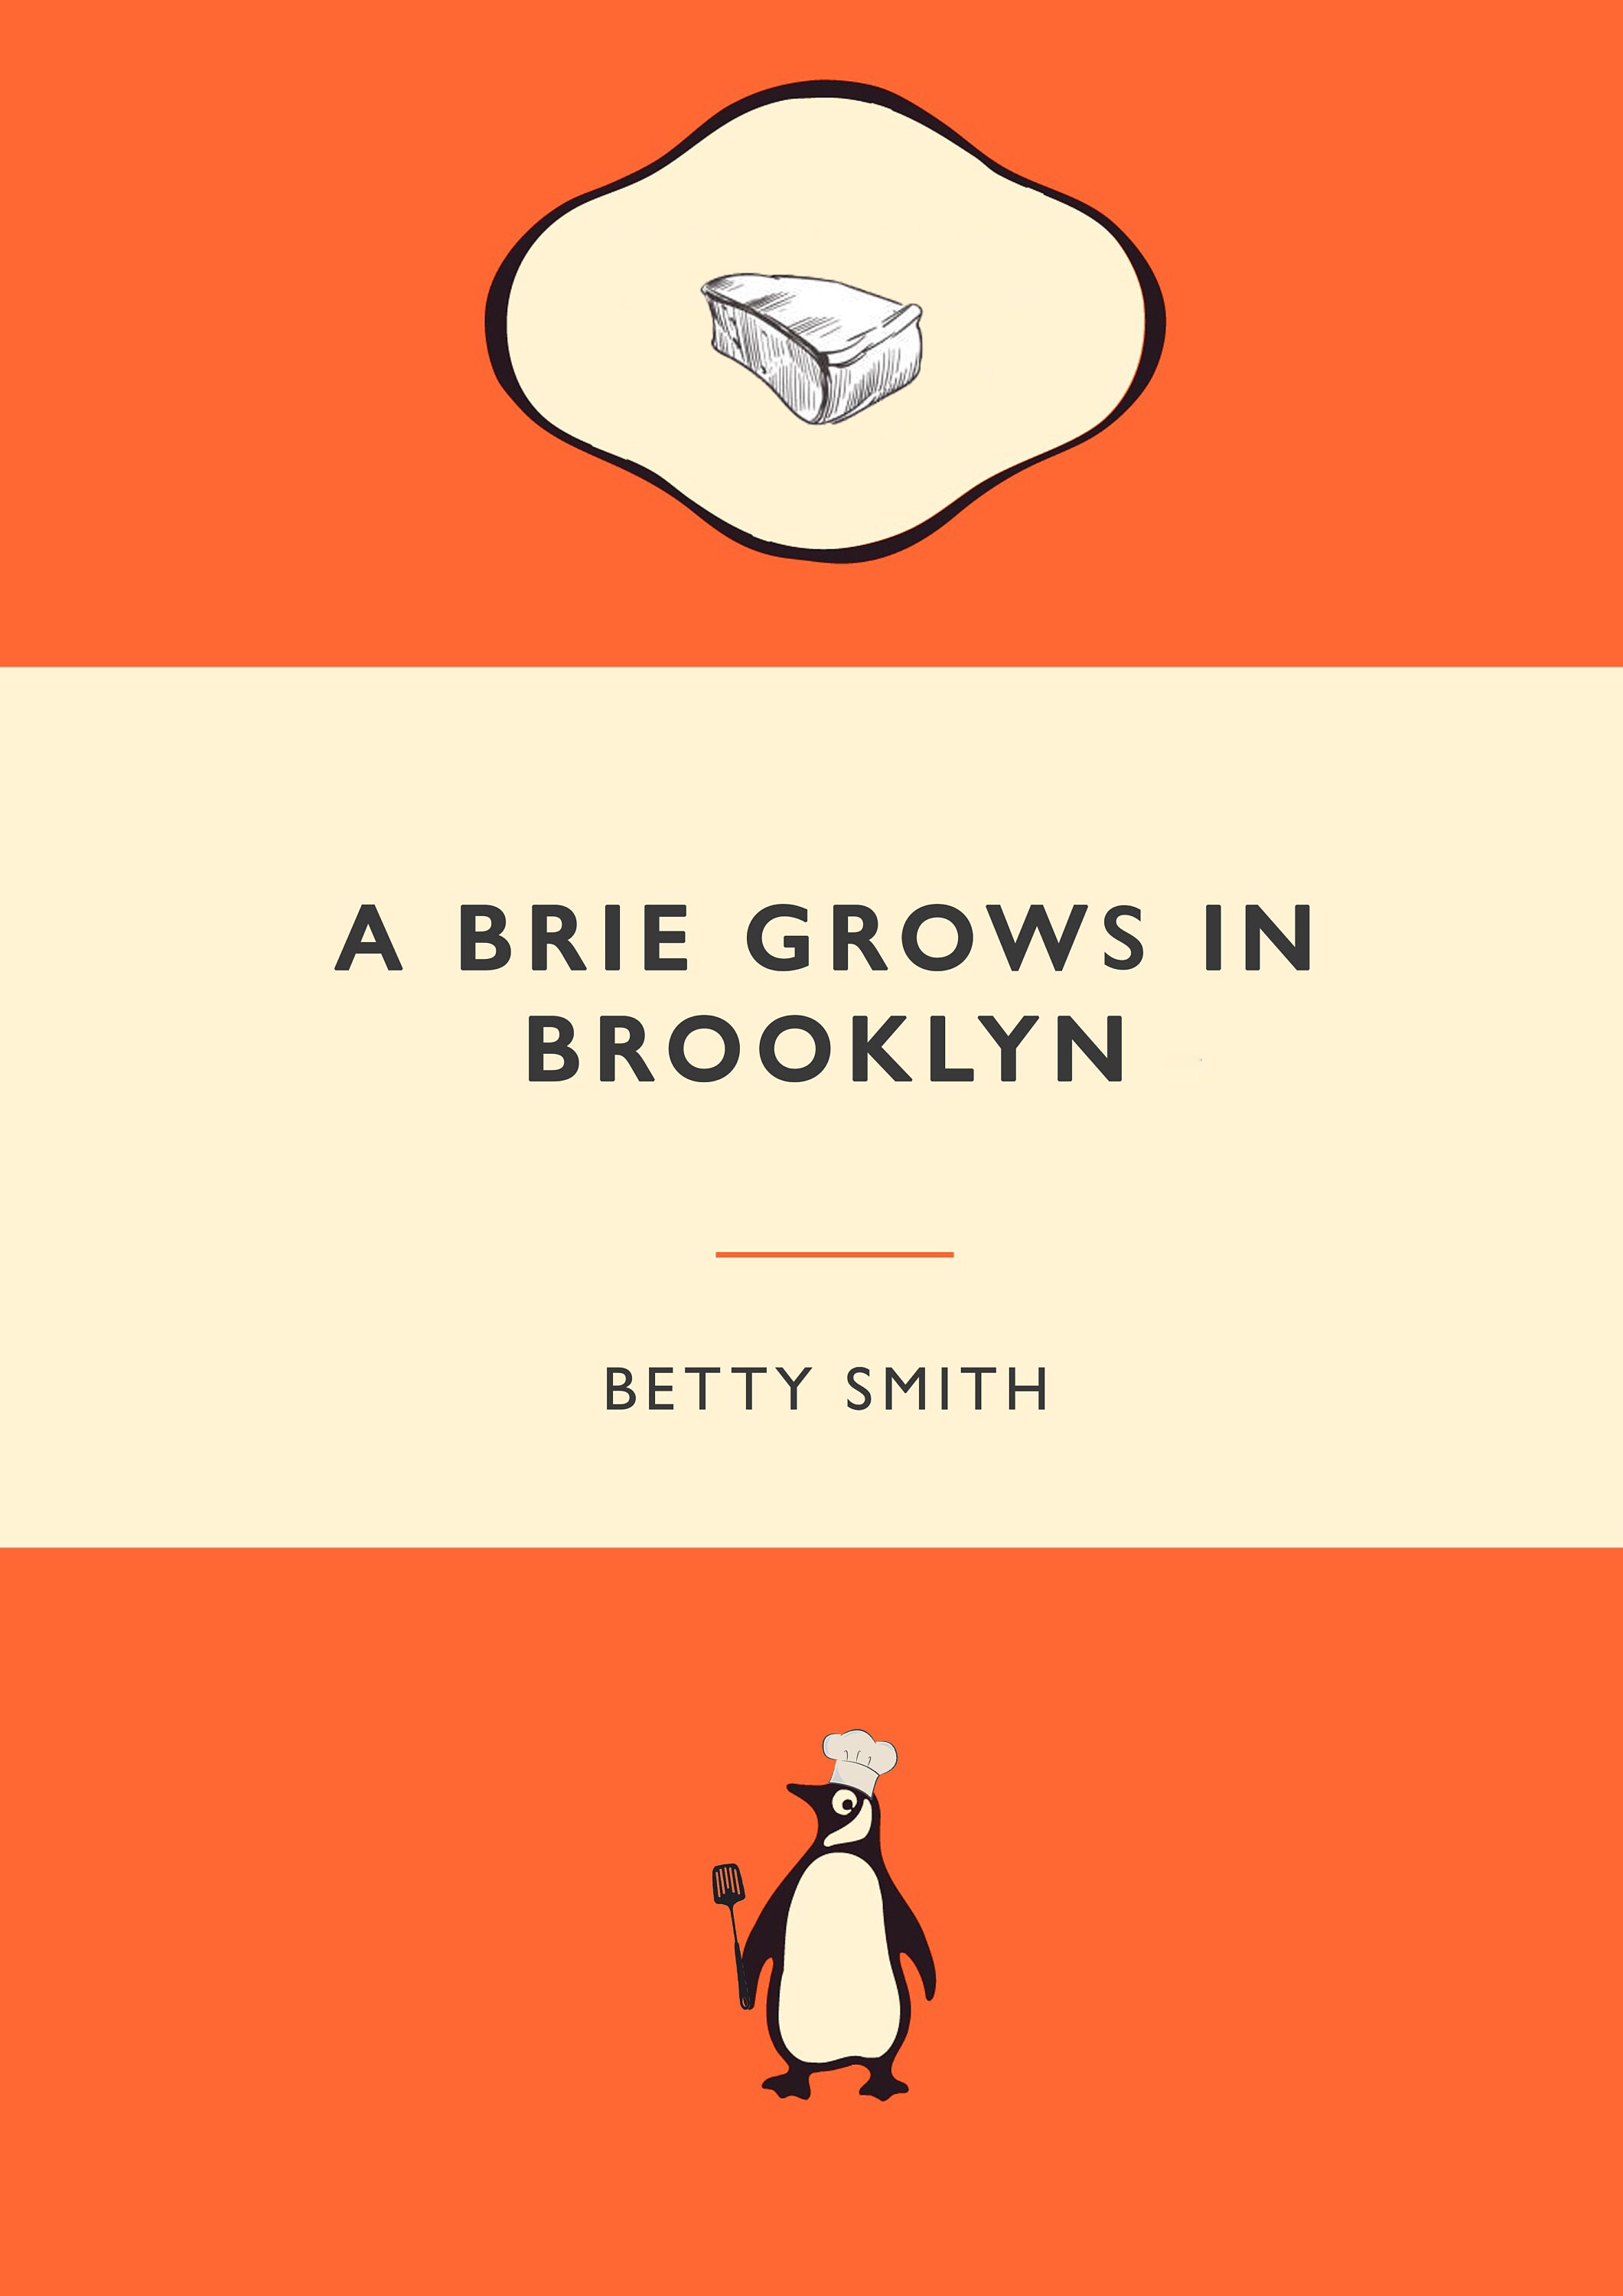 A brie grows in brooklyn